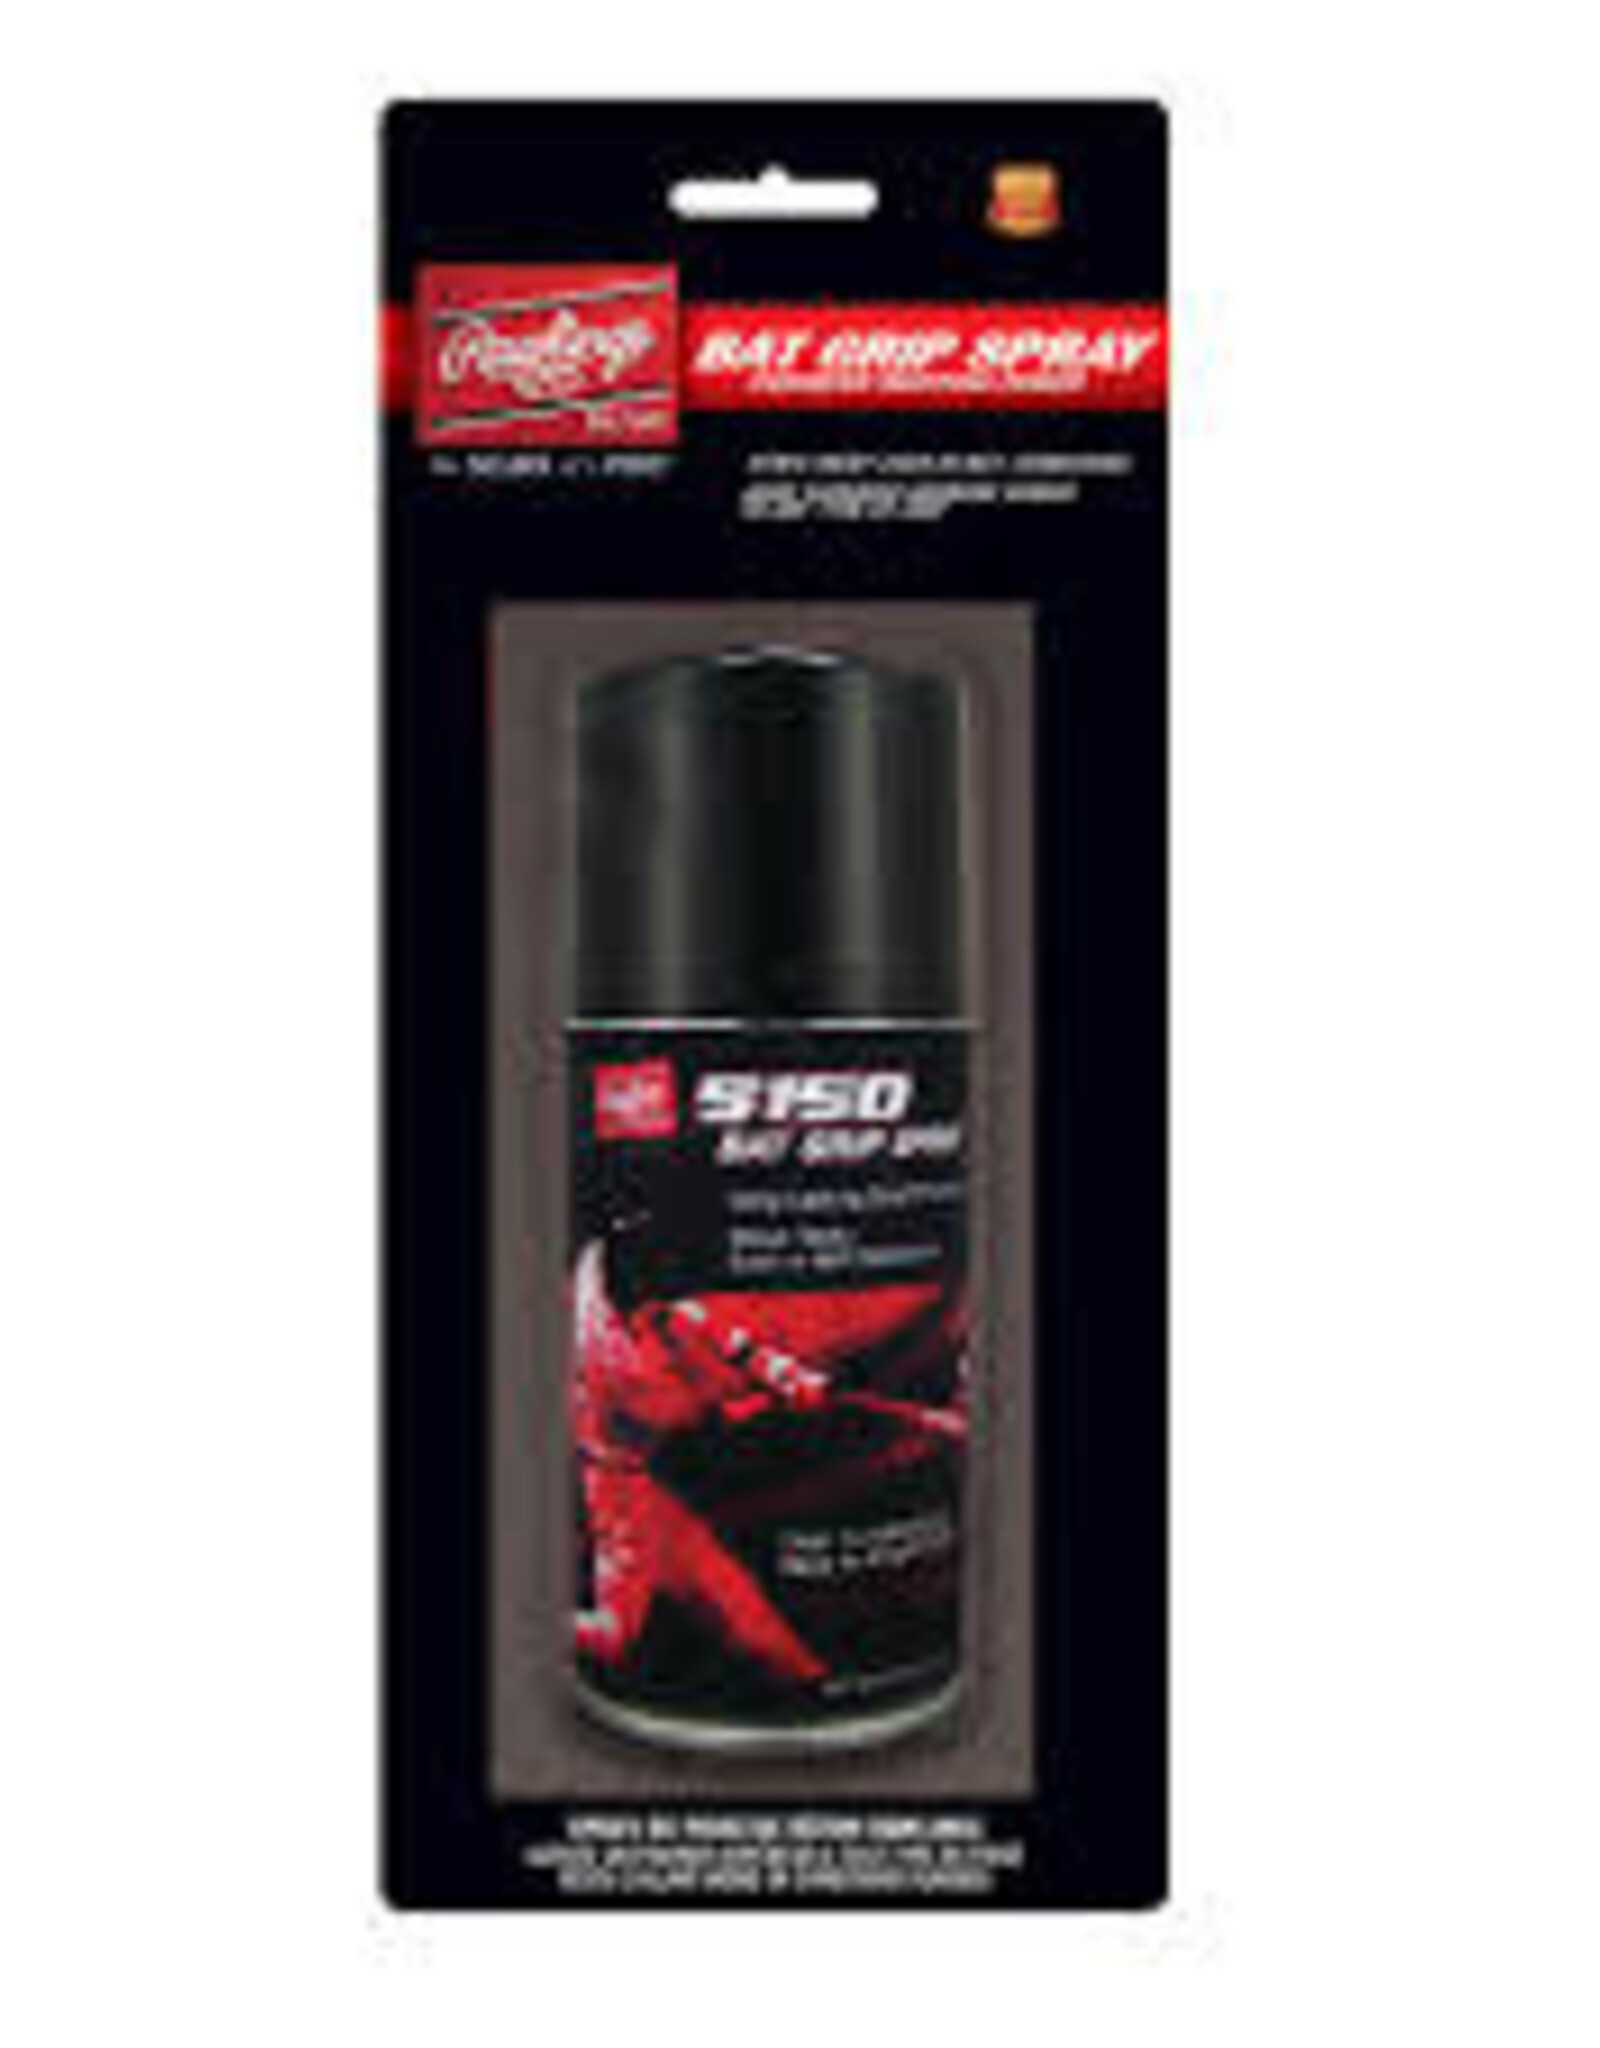 Rawlings Rawlings "5150" Bat Grip Spray